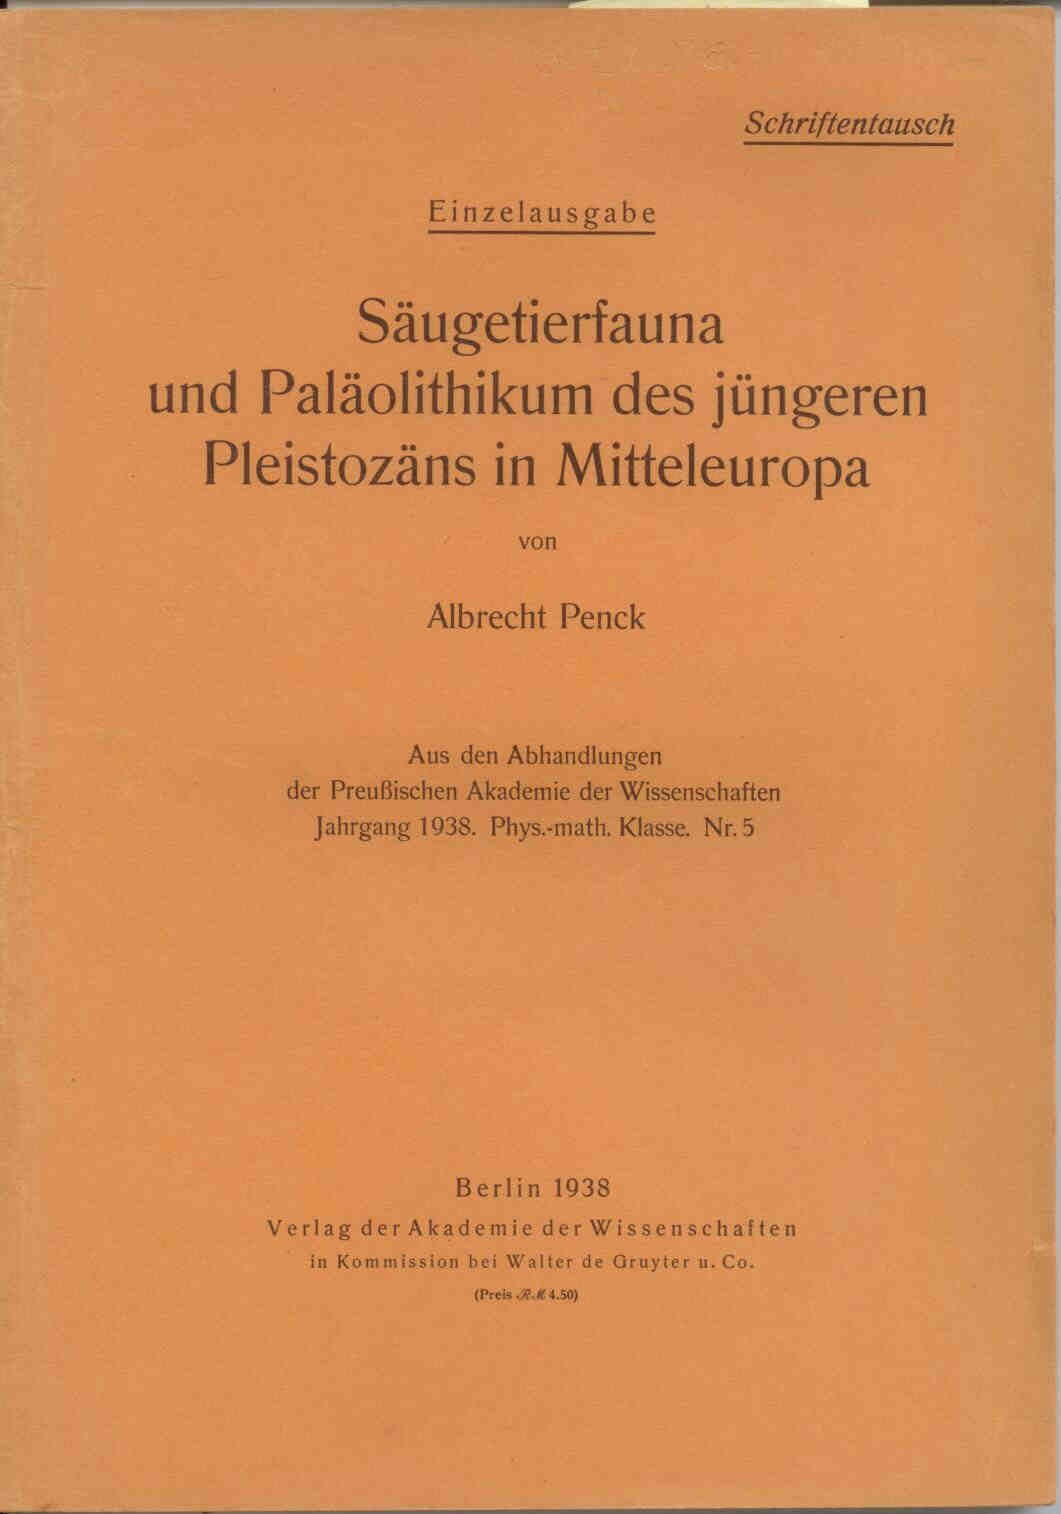 Penck, A.: Säugetierfauna und Paläolithikum des jüngeren Pleistozäns in Mitteleuropa. 